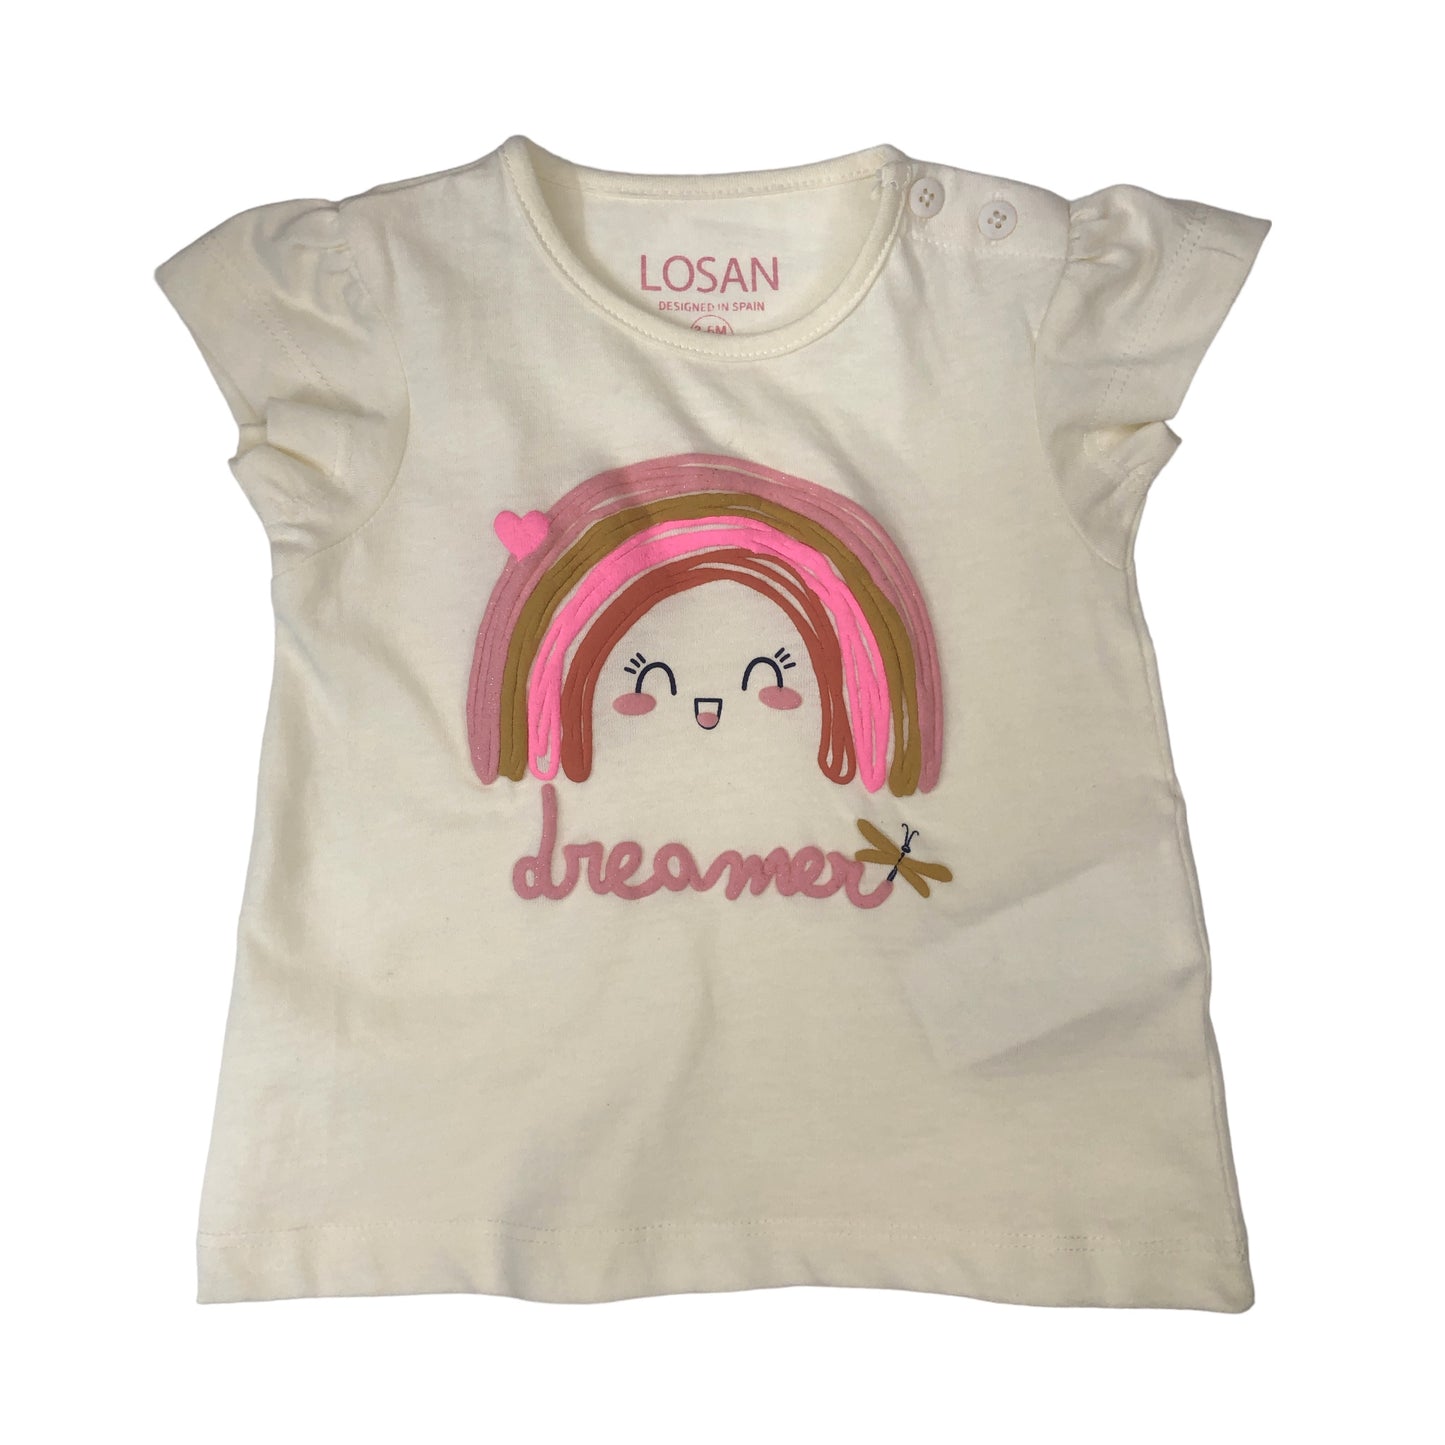 Conjunto de camiseta manga corta "dreamer" y pantalón bebé niña Losan